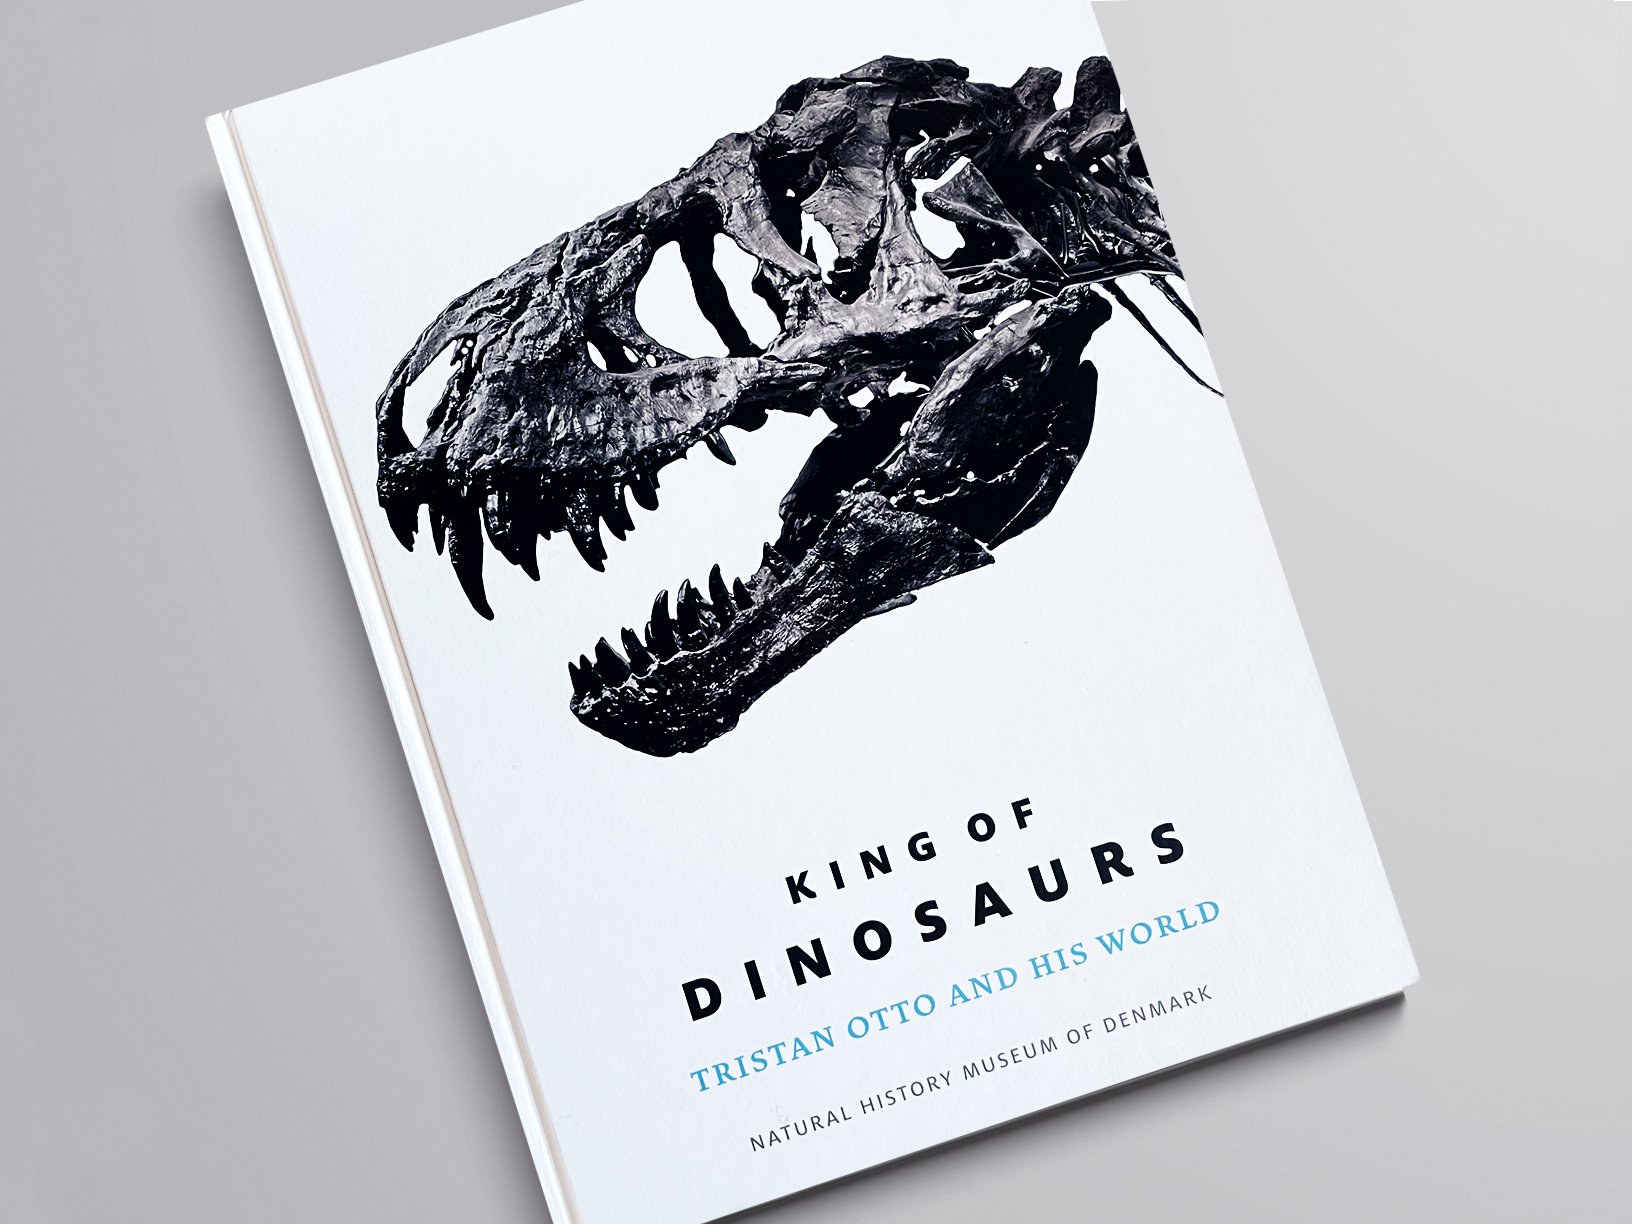 King+of+Dinousaurs-cover1.jpg